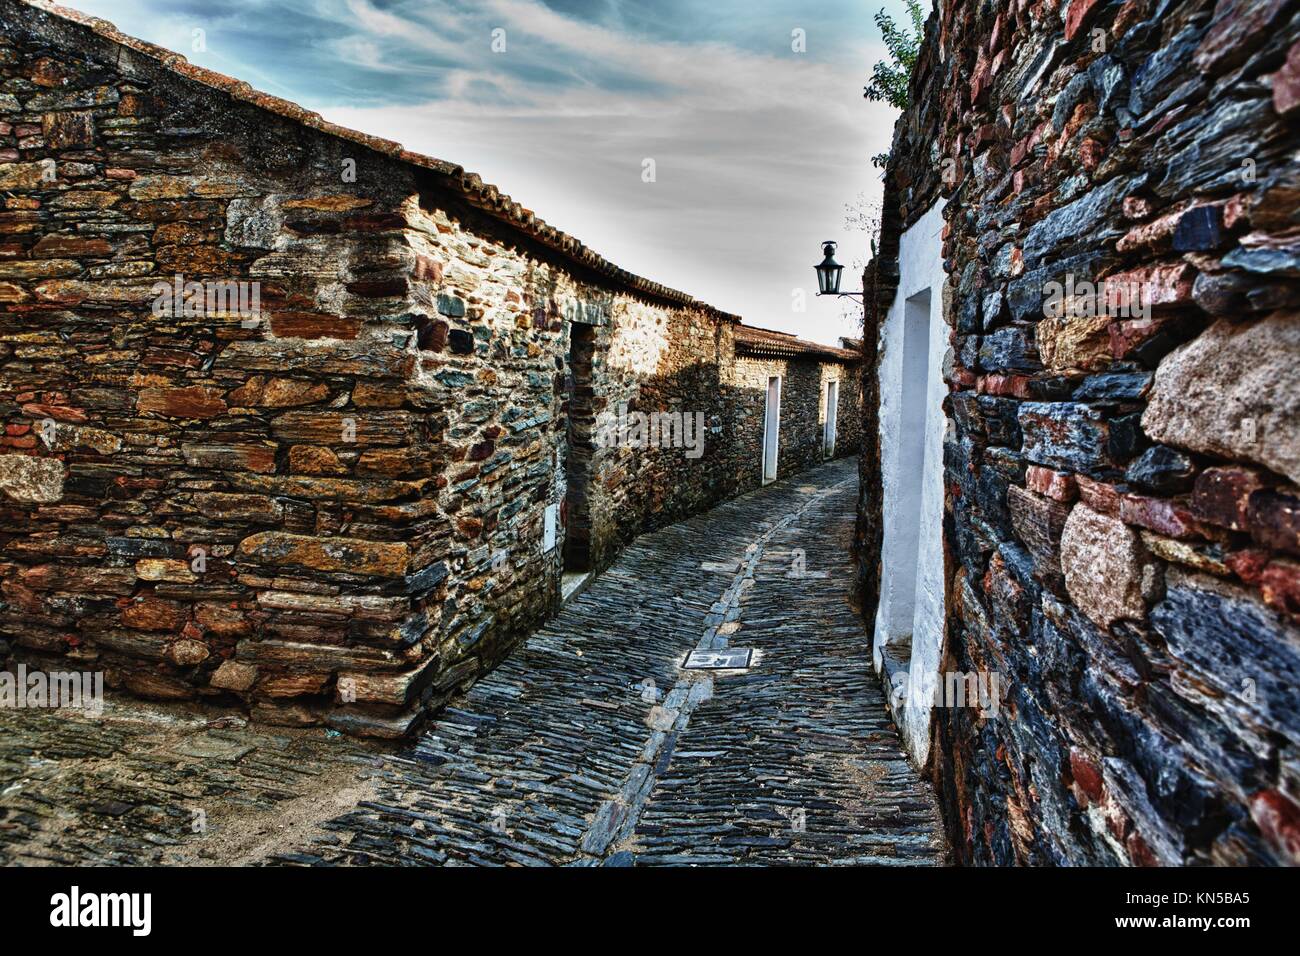 Magnifico villaggio di Monsaraz; tradizionale street con piccole case bianche e tegole rosse una vista tipica del sud del paese. Foto Stock